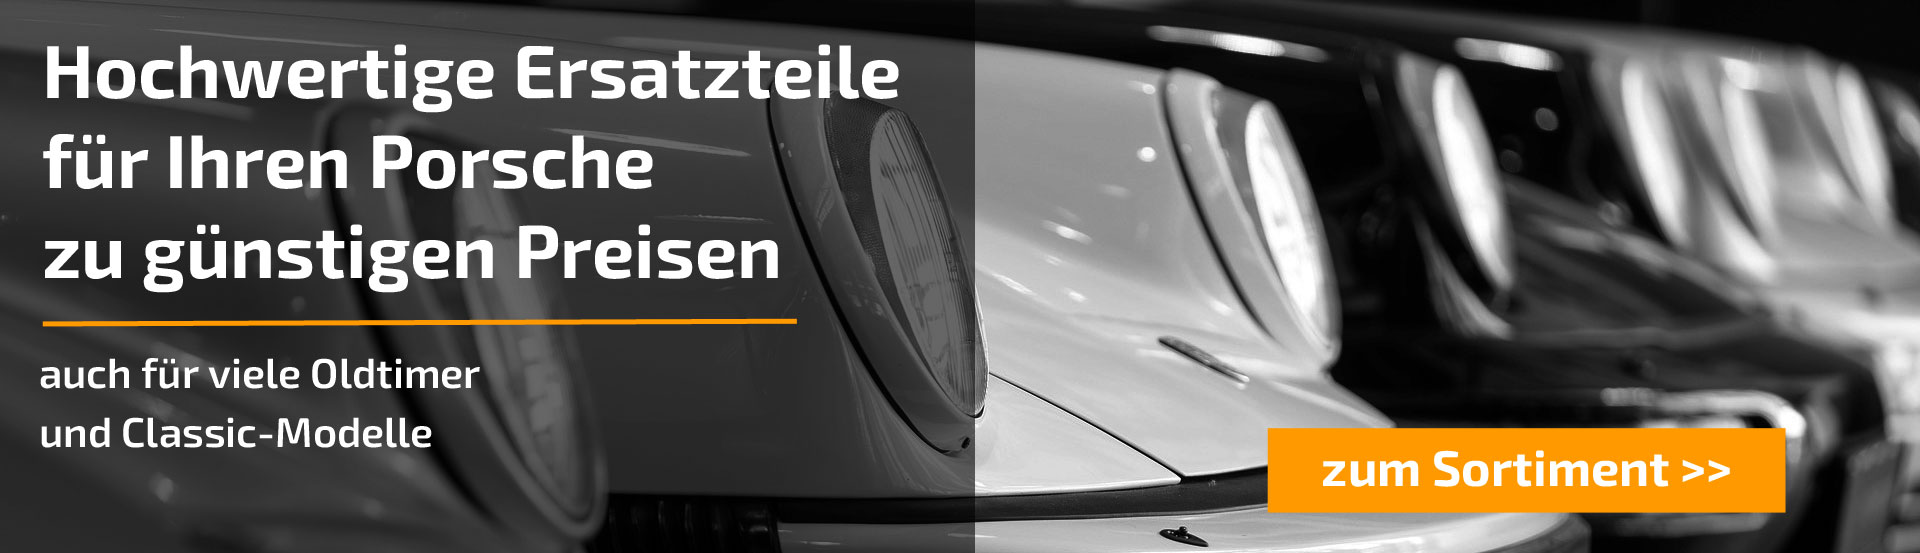 Headerbild für Porsche Ersatzteile Landingpage